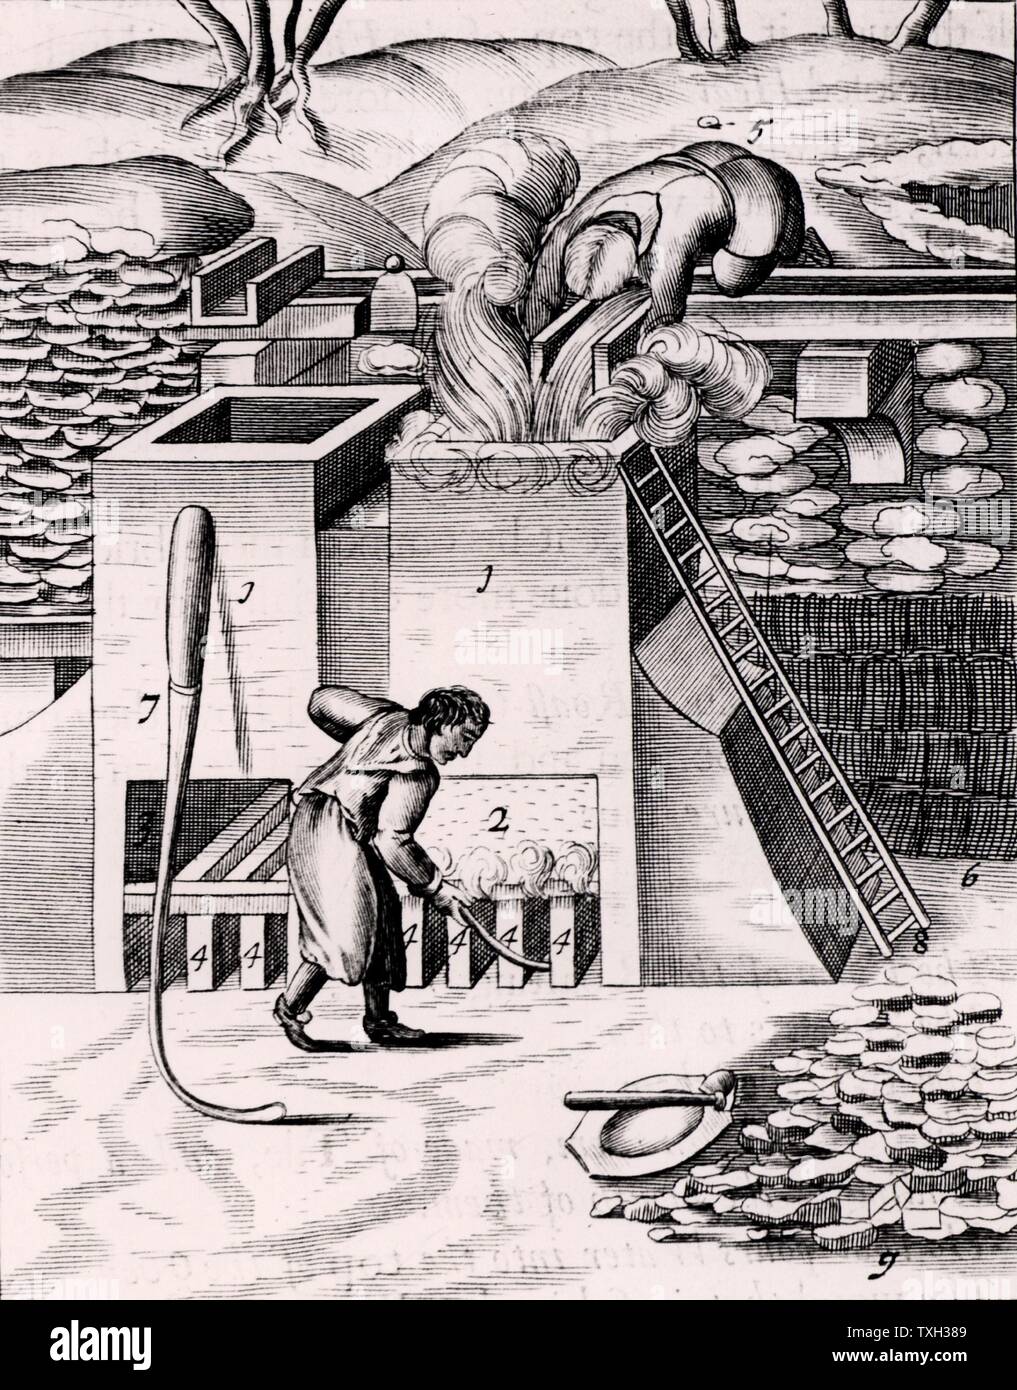 Die Röstung Golderz, um das Edelmetall zu erholen. Ab 1683 Englische Ausgabe von Lazarus Ercker' Beschreibung allerfurnemisten Ertzt mineralischen- und Berckwercksarten" ursprünglich in Prag im Jahr 1574 veröffentlicht. Kupferstich. Stockfoto